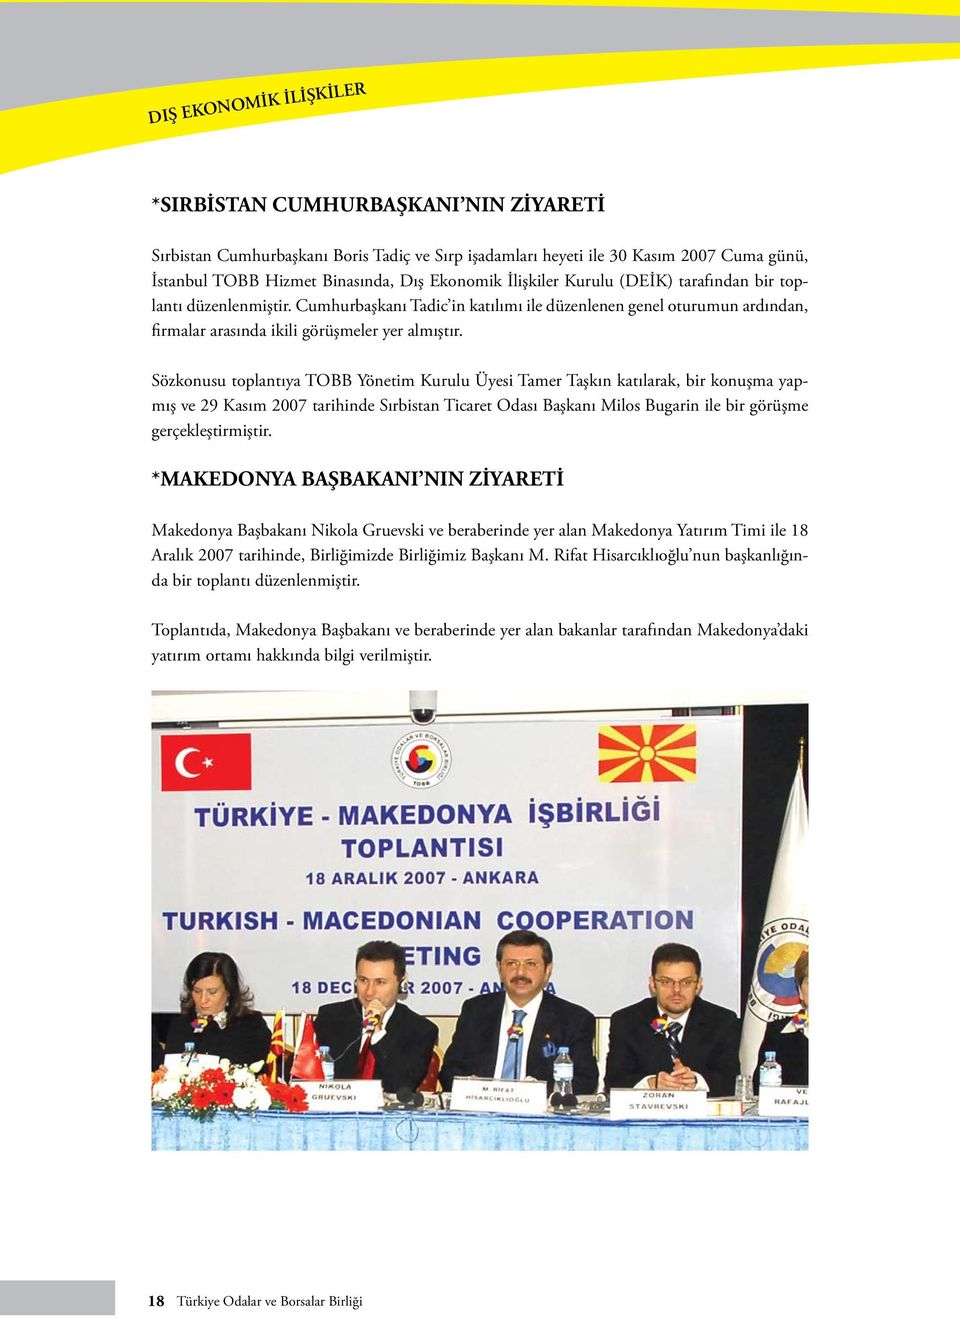 Sözkonusu toplantıya TOBB Yönetim Kurulu Üyesi Tamer Taşkın katılarak, bir konuşma yapmış ve 29 Kasım 2007 tarihinde Sırbistan Ticaret Odası Başkanı Milos Bugarin ile bir görüşme gerçekleştirmiştir.